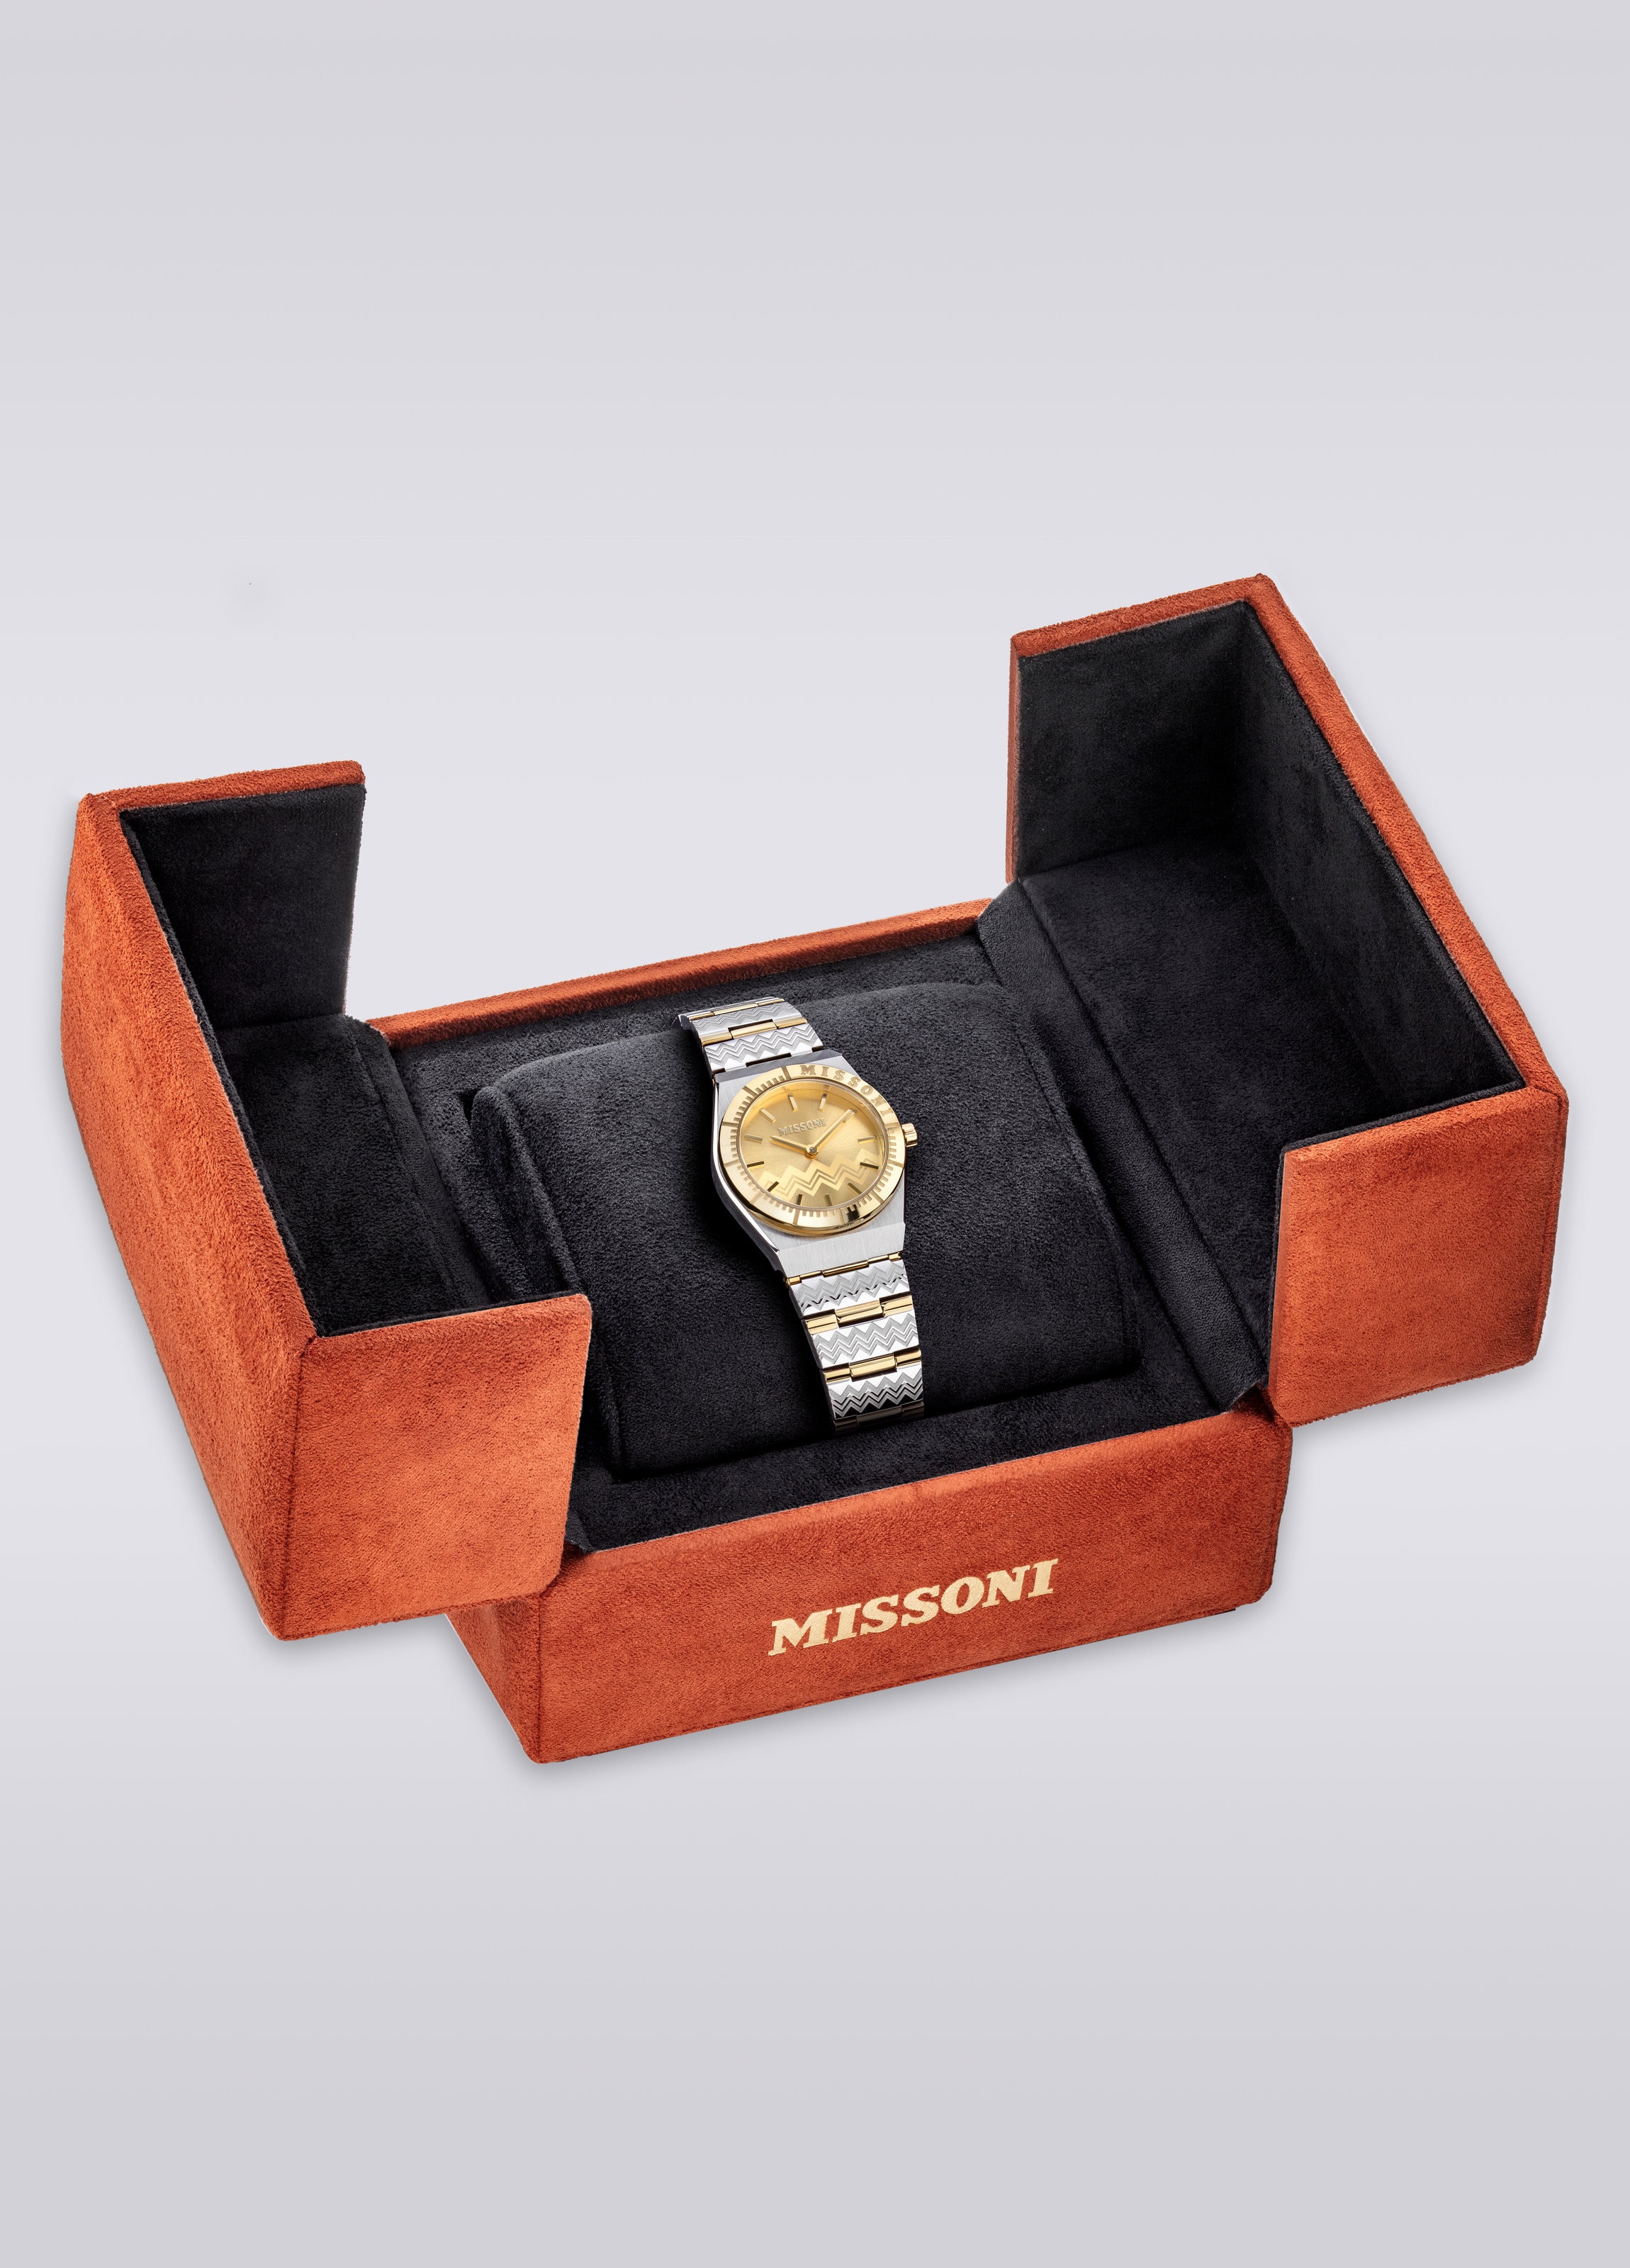 Missoni Milano, Uhr mit 29 MM Gehäusegröße, Mehrfarbig  - 4